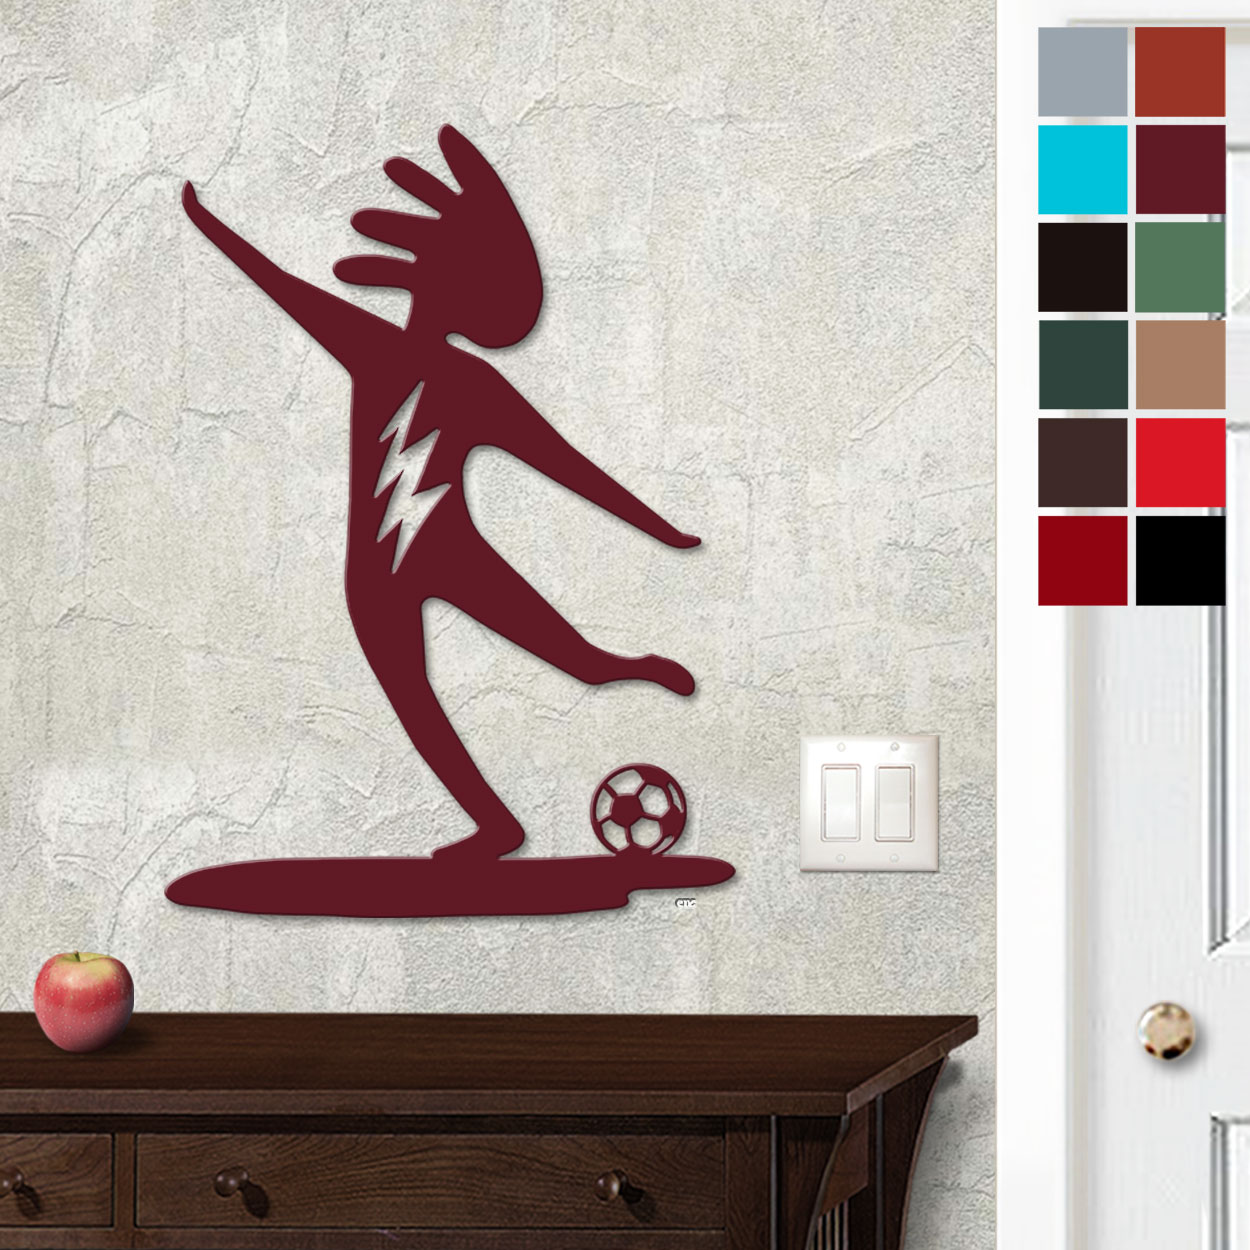 625028 - 18in or 24in Floating Metal Wall Art - Kokopelli Soccer - Choose Color